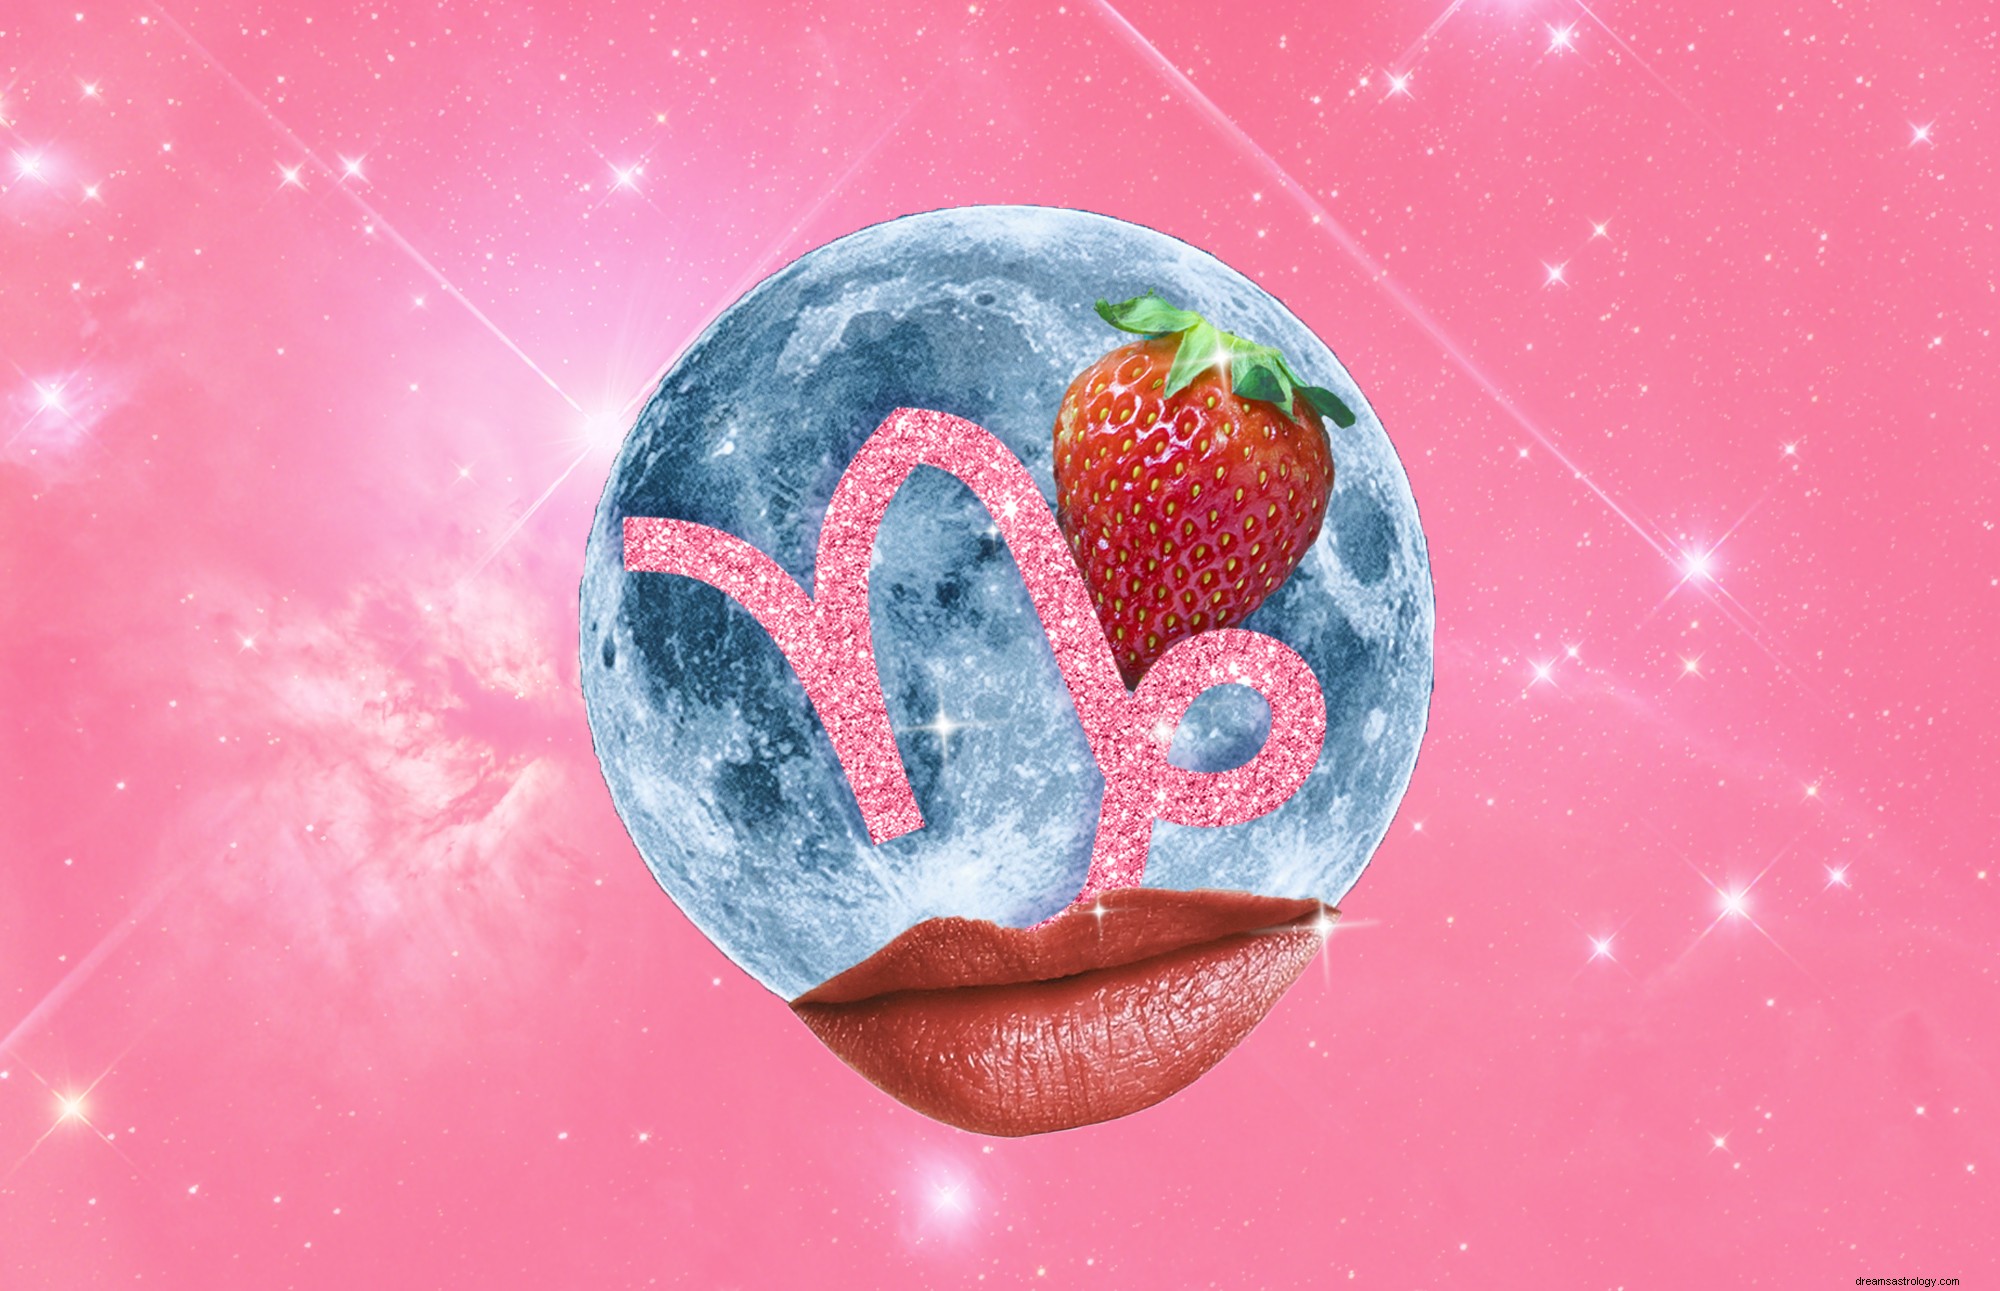 Junes fullmåne, jordgubbsmånen, skulle kunna få dig att revidera din definition av framgång 